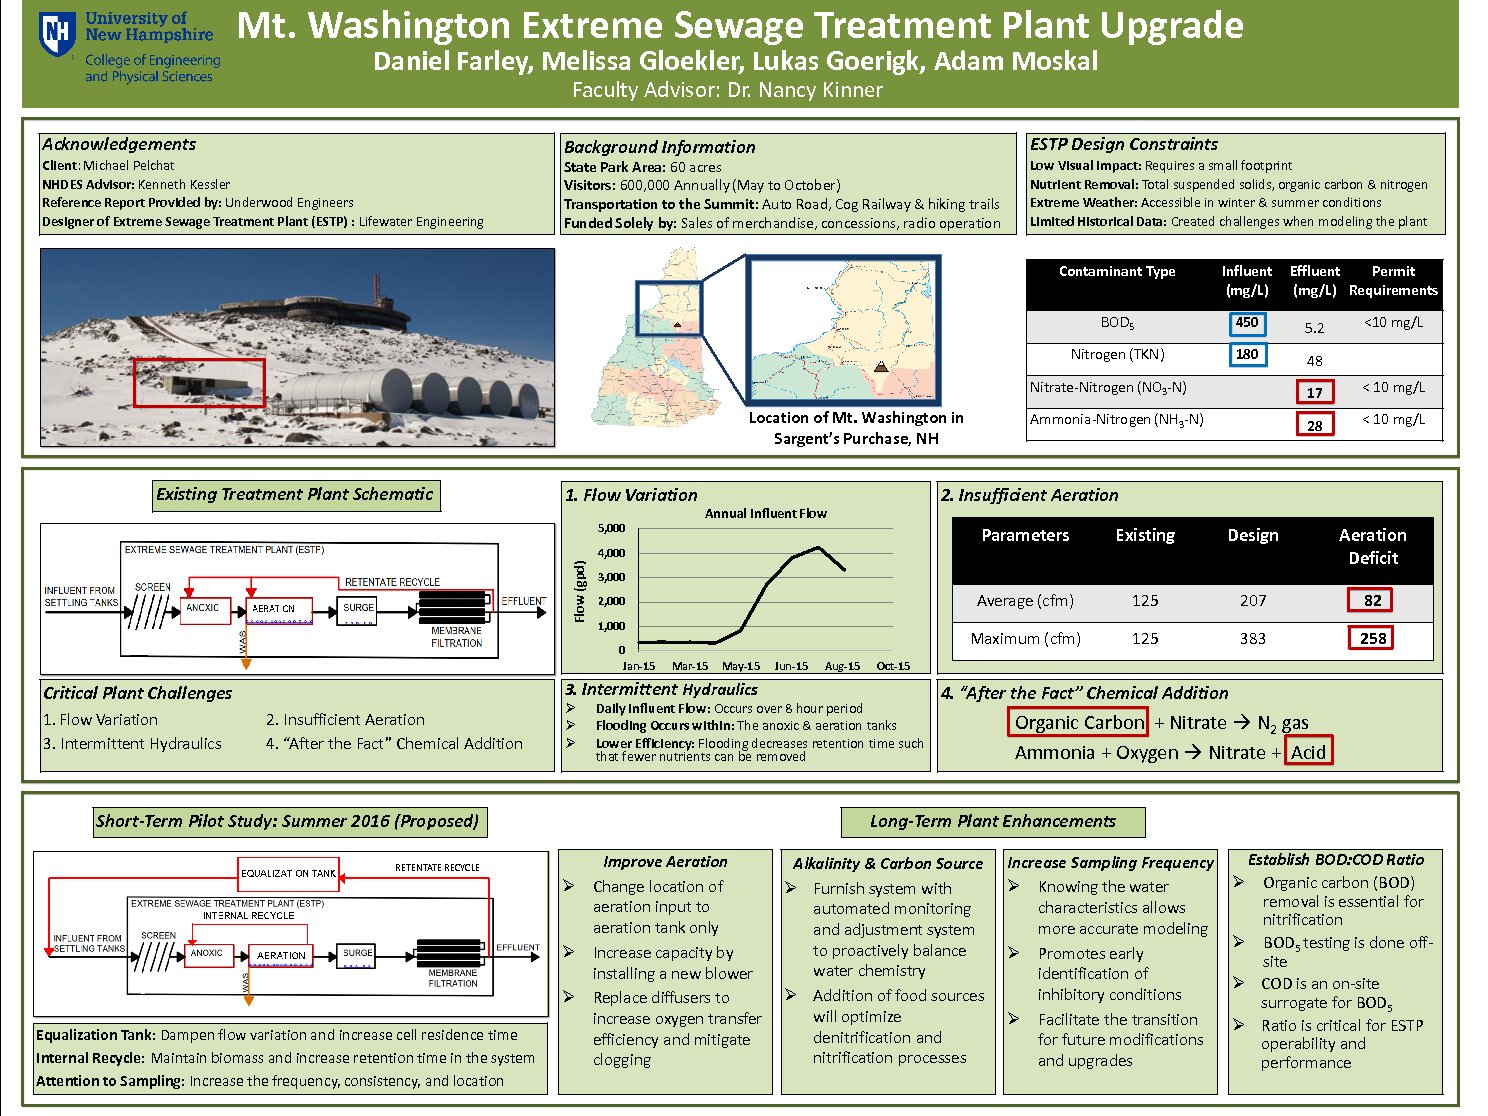 Mt. Washington Extreme Sewage Treatment Plant Upgrade by djr92